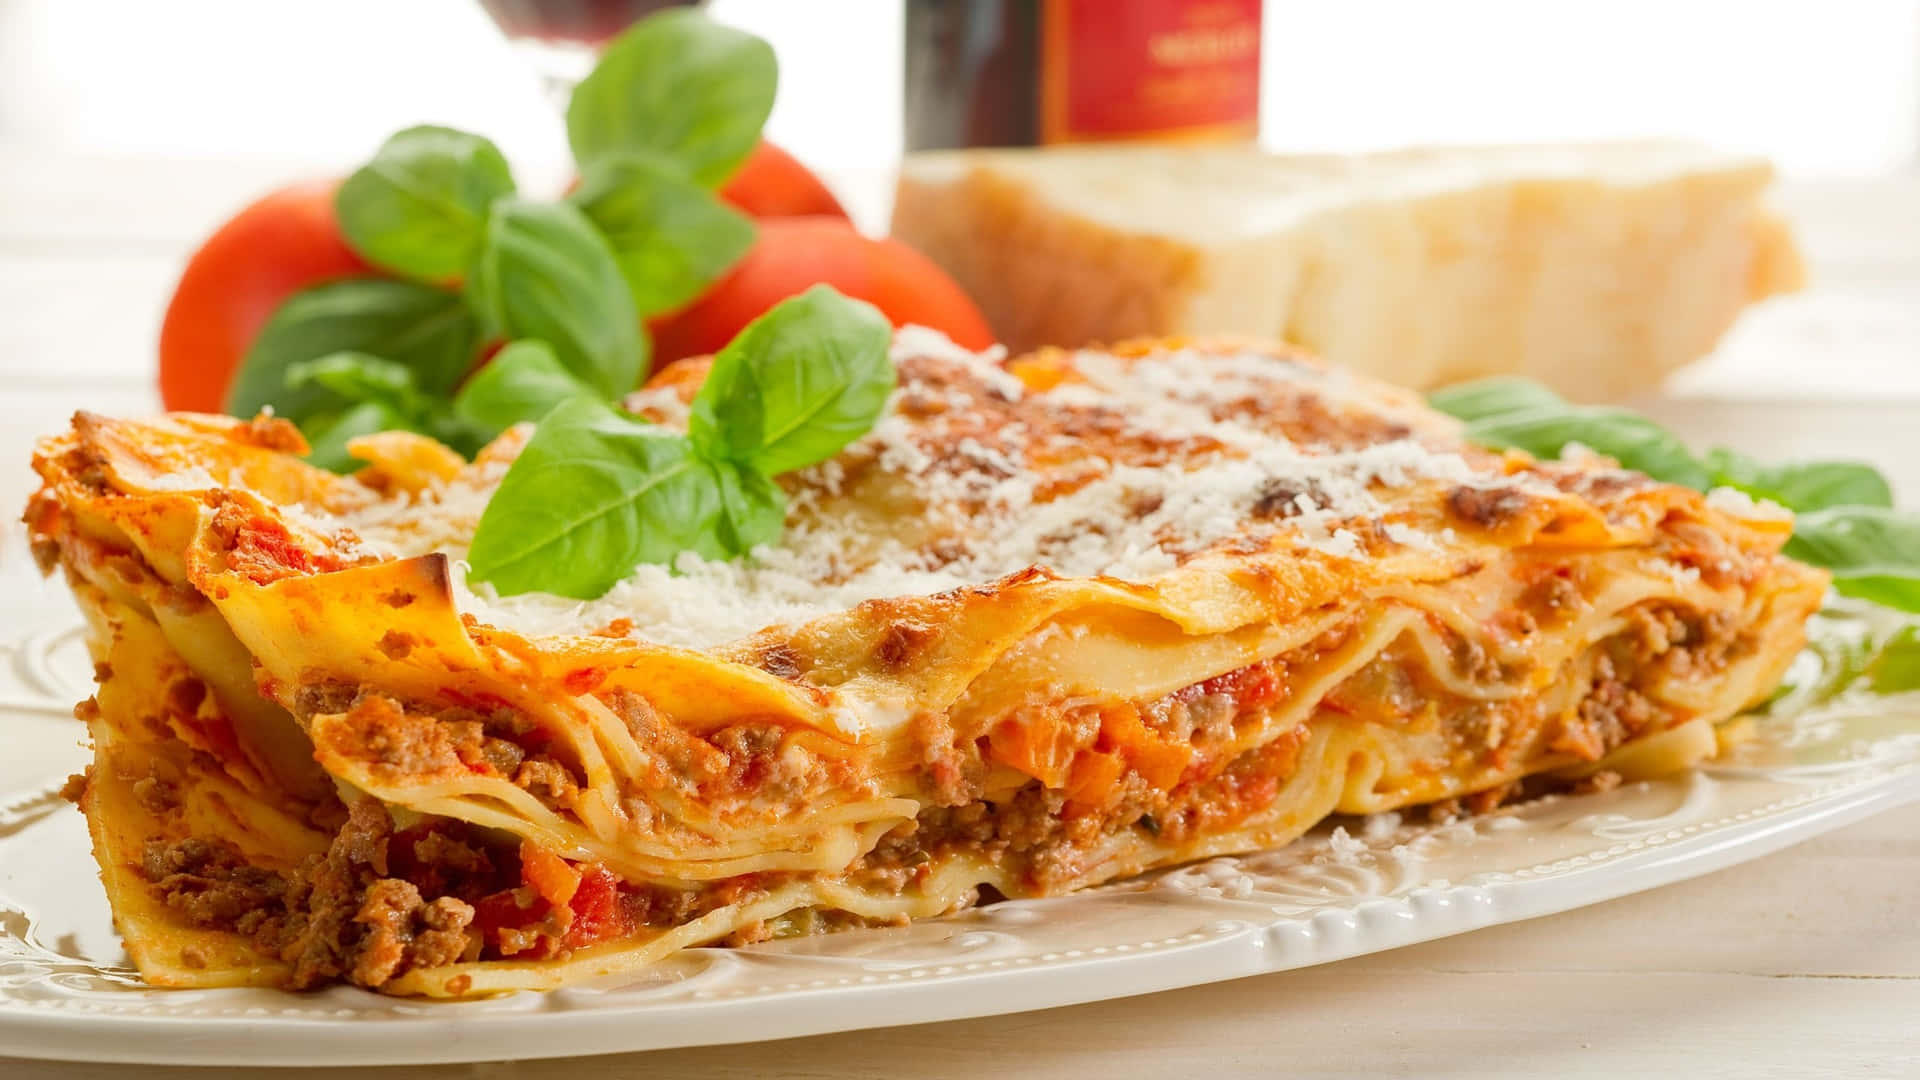 Famosopiatto Italiano Lasagna 1920x1080 Sfondo Di Pasta